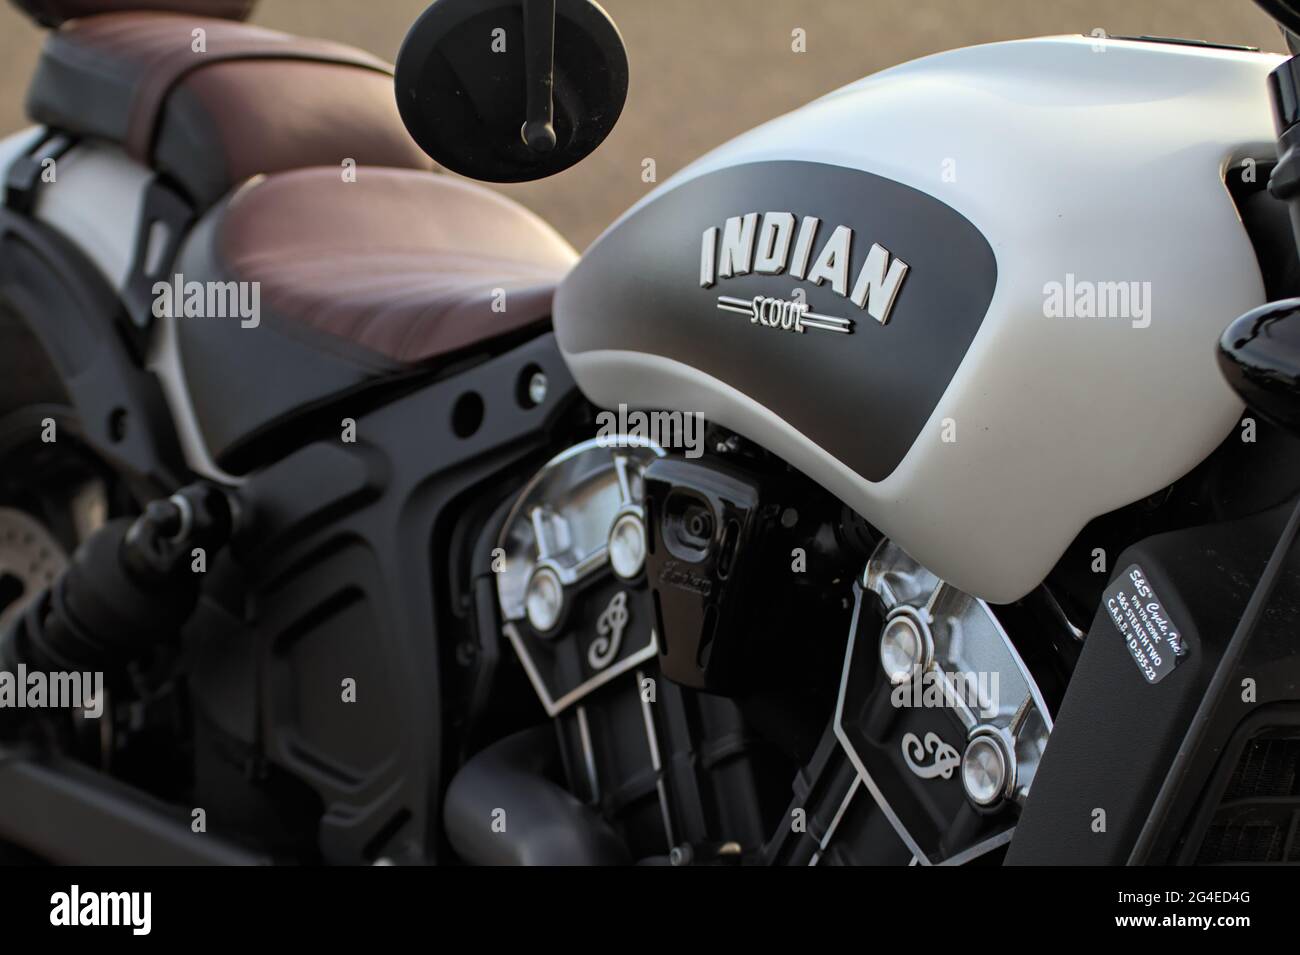 La moto Bobber Scout indien moderne montrant le logo indien sur le réservoir d'essence Mudeford Quay UK Banque D'Images